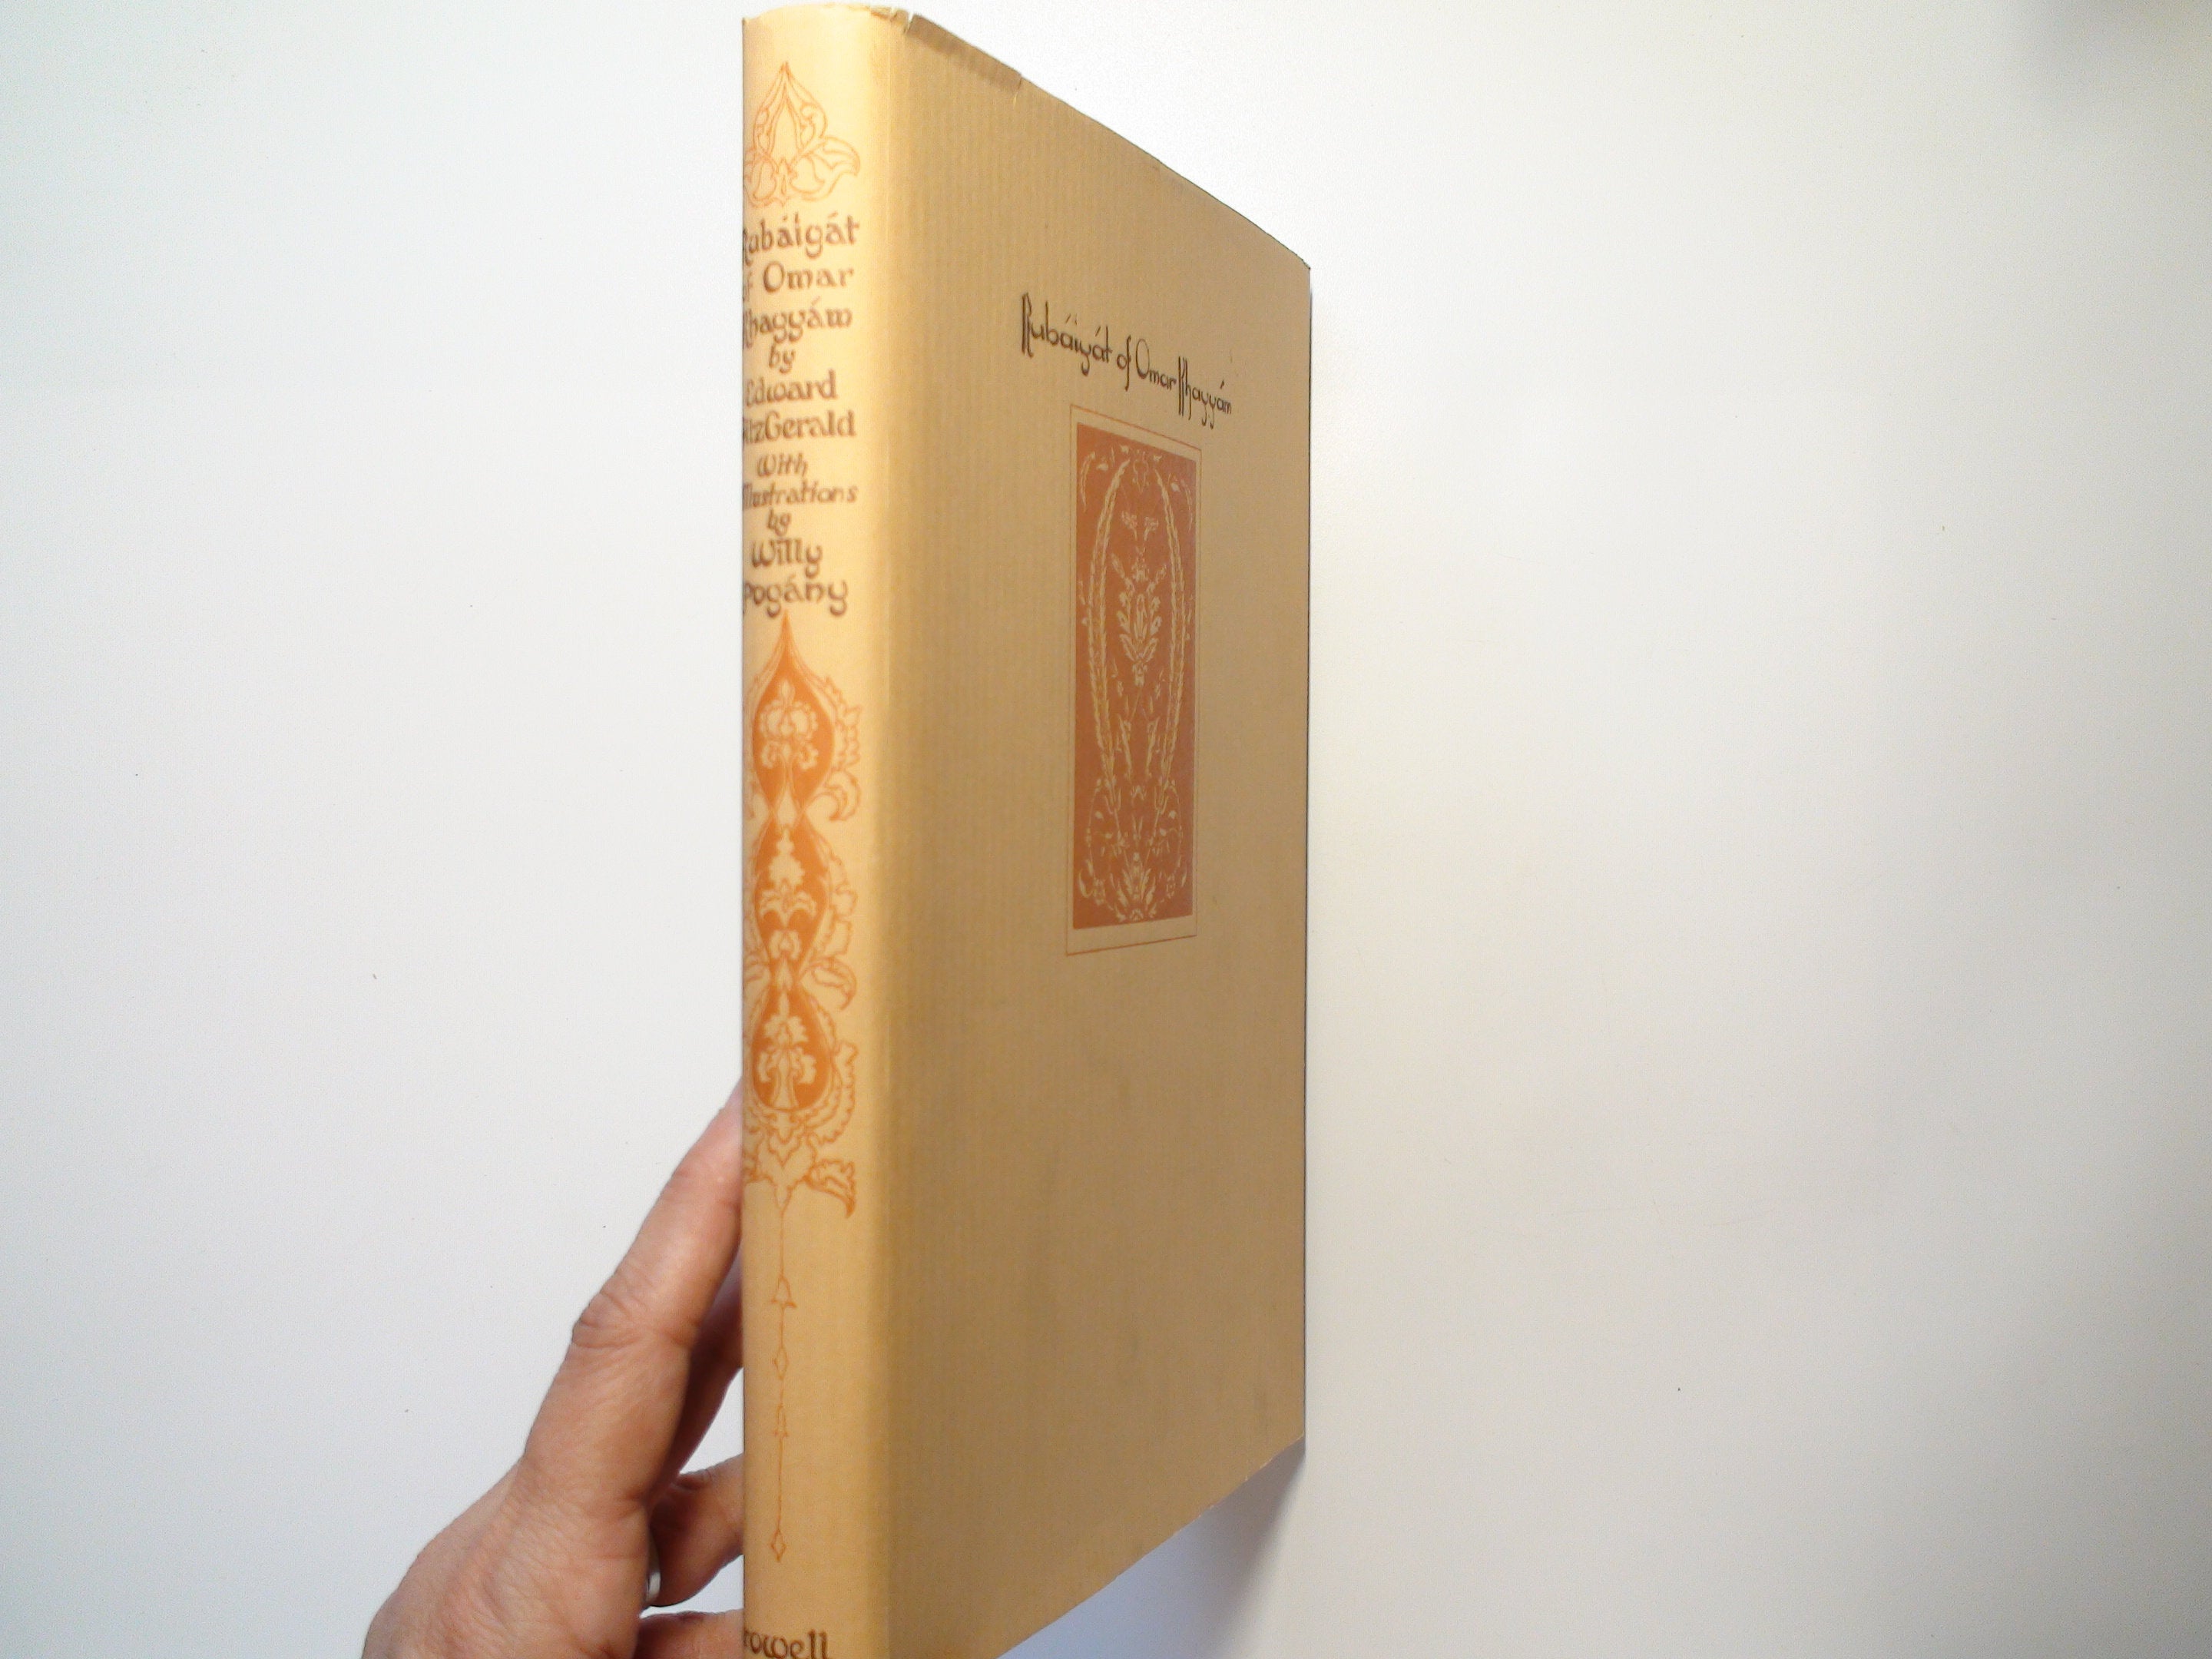 Rubaiyat of Omar Khayyam, Illustrated by Willy Pogany, 1st Ed, in Original Box